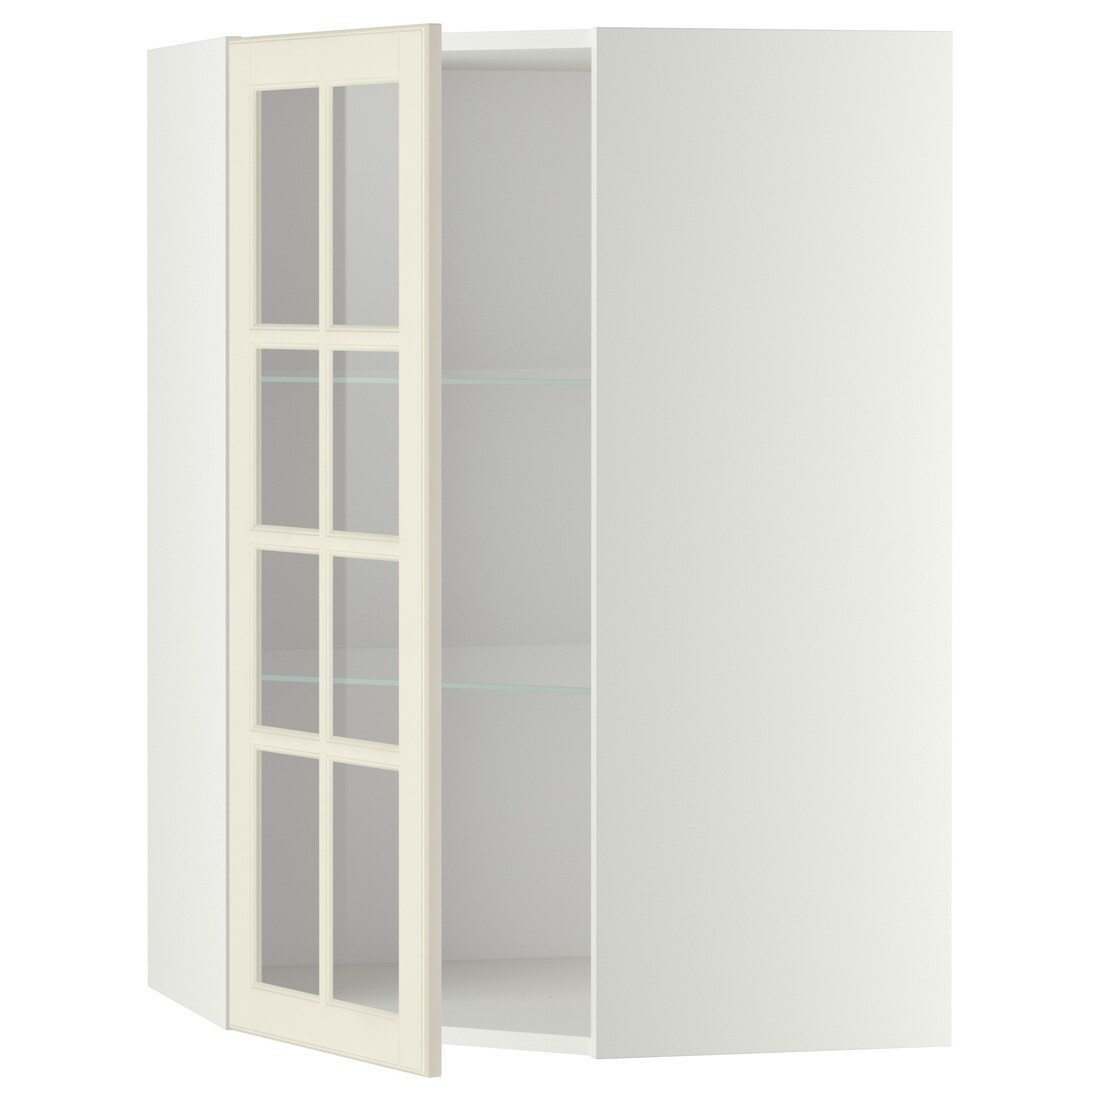 IKEA METOD МЕТОД Угловой настенный шкаф с полками / стеклянная дверь, белый / Bodbyn кремовый, 68x100 см 39394987 393.949.87